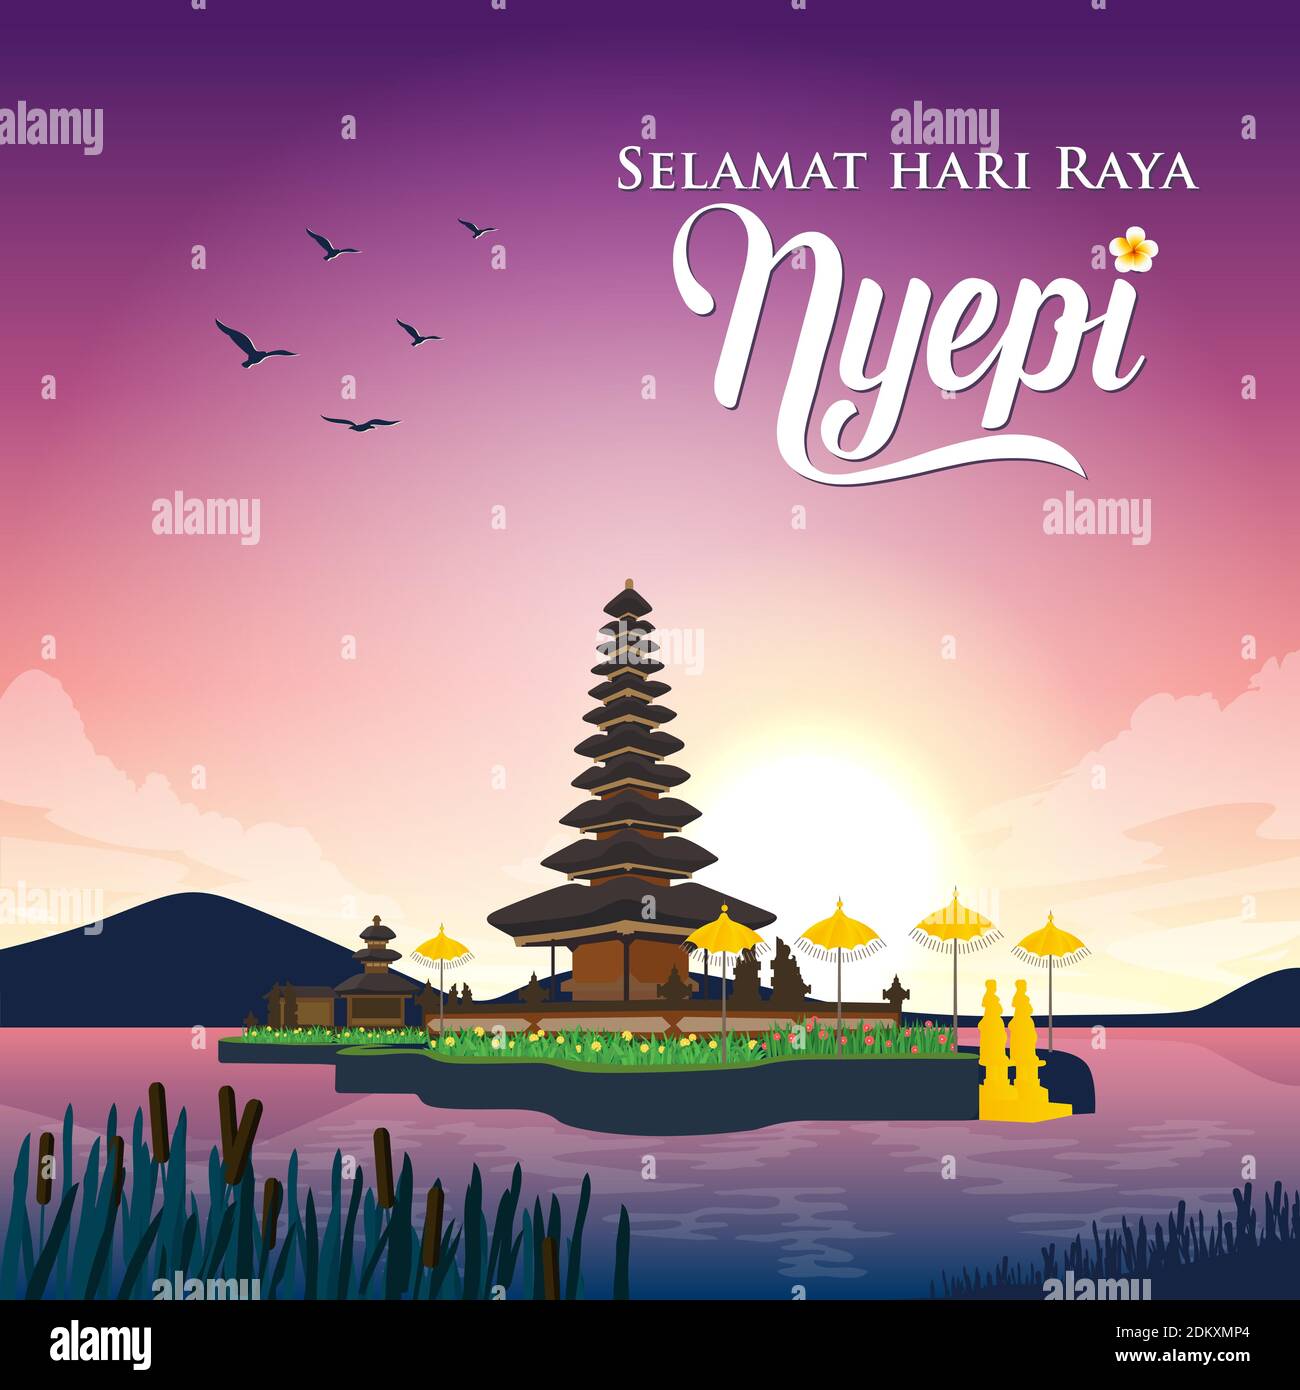 Selamat hari raya Nyepi. Translation Happy Day Of Silence Nyepi